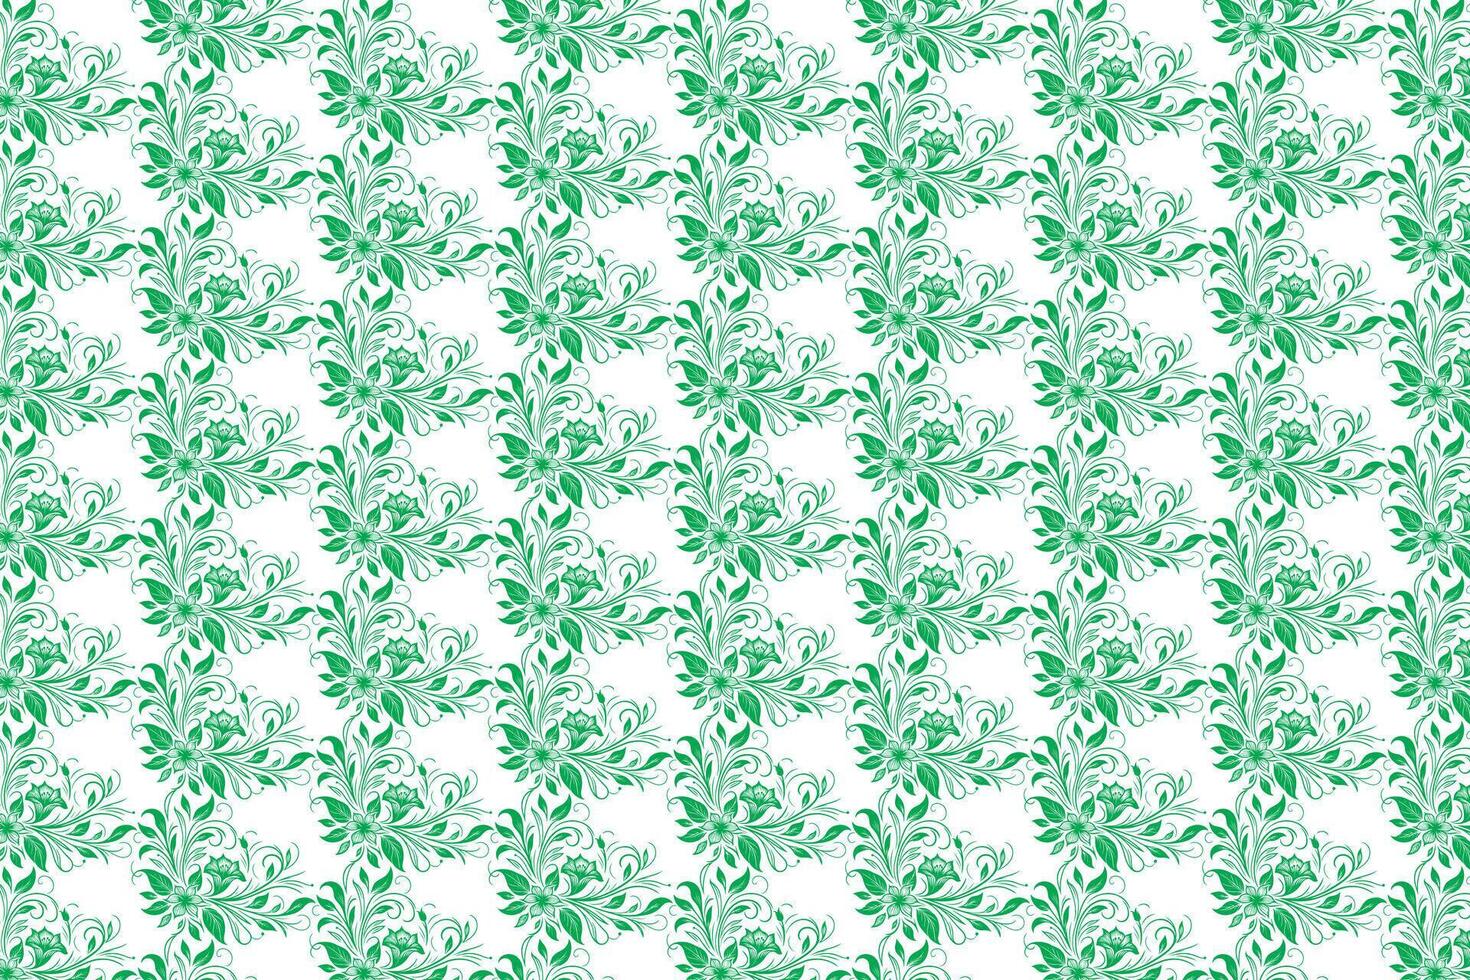 Hand zeichnen Blumen- Blume nahtlos Muster von Grün Blumen- Blätter Frühling Platz Stil Vektor Design auf ein Weiß Hintergrund, Vorhang, Teppich, Hintergrund, Kleidung, Verpackung